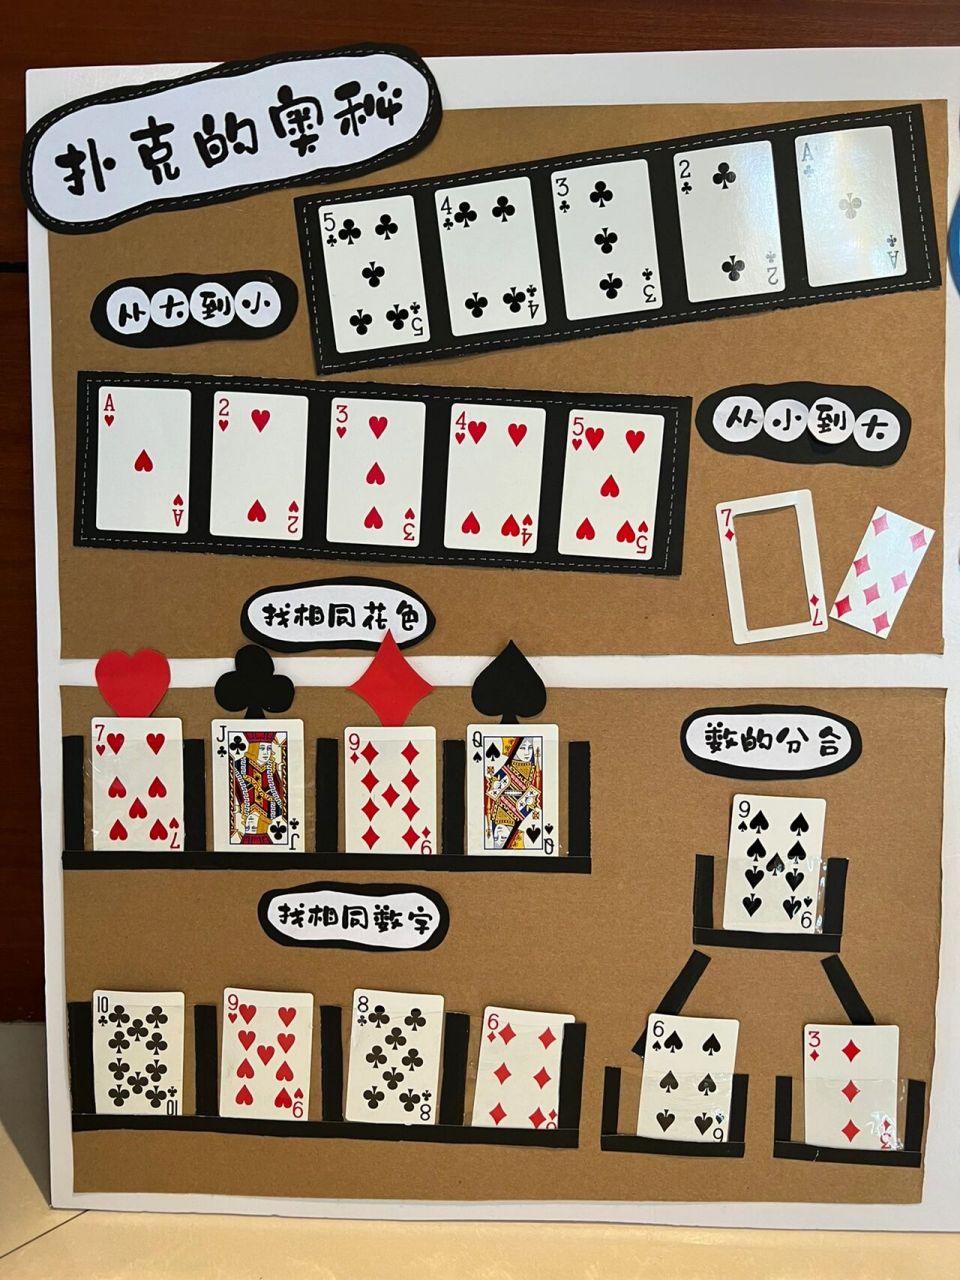 益智区百变扑克牌,幼儿园扑克的奥秘游戏 扑克牌可以有很多种玩法